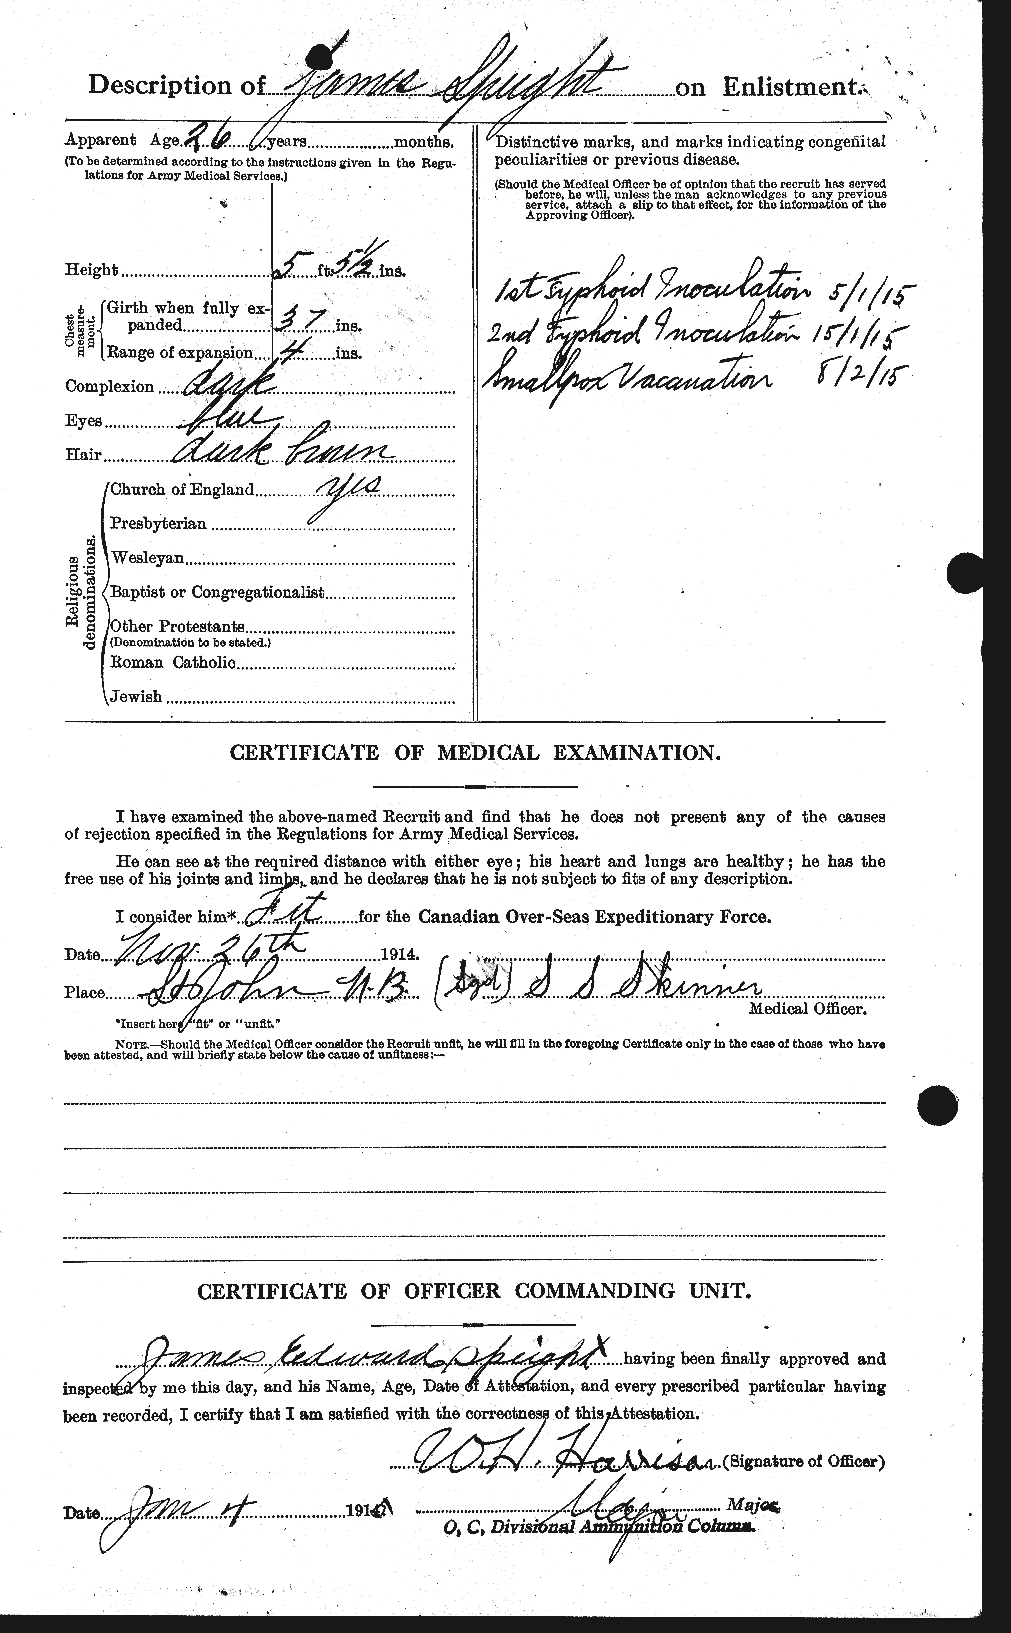 Dossiers du Personnel de la Première Guerre mondiale - CEC 110069b